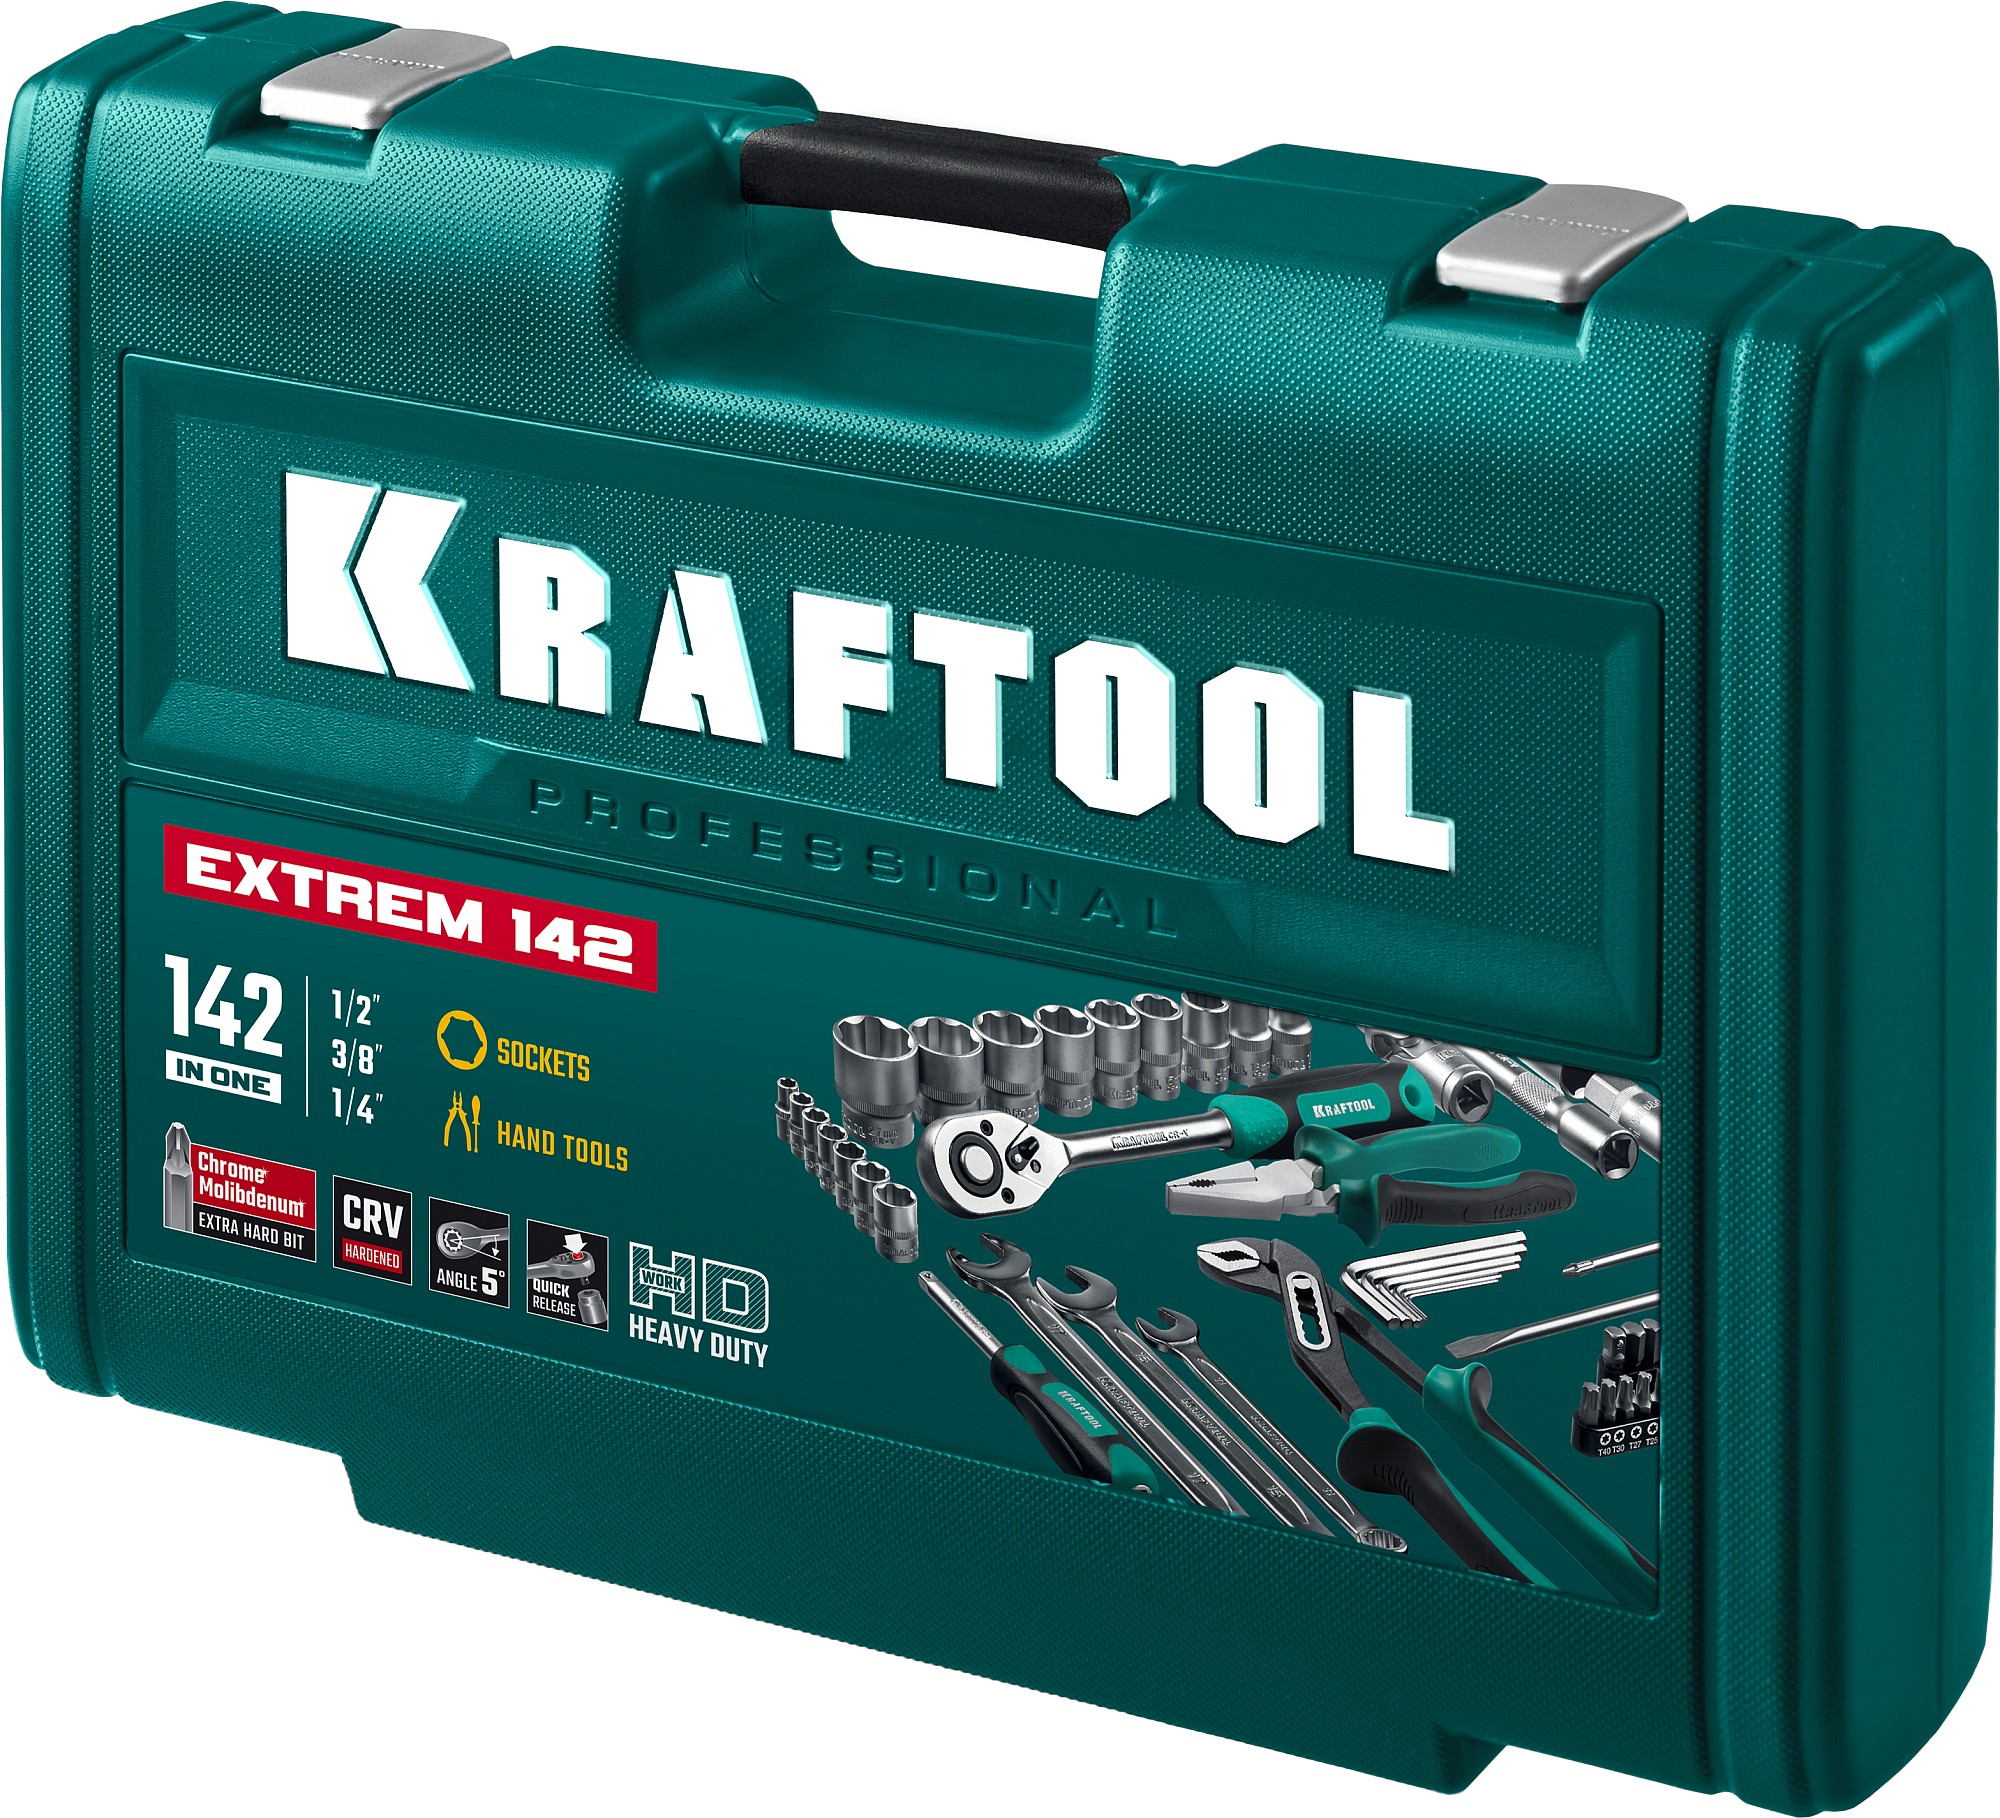 KRAFTOOL EXTREM-142, 142 предм., (1/2″+3/8″+1/4″), универсальный набор инструмента (27889-H142)